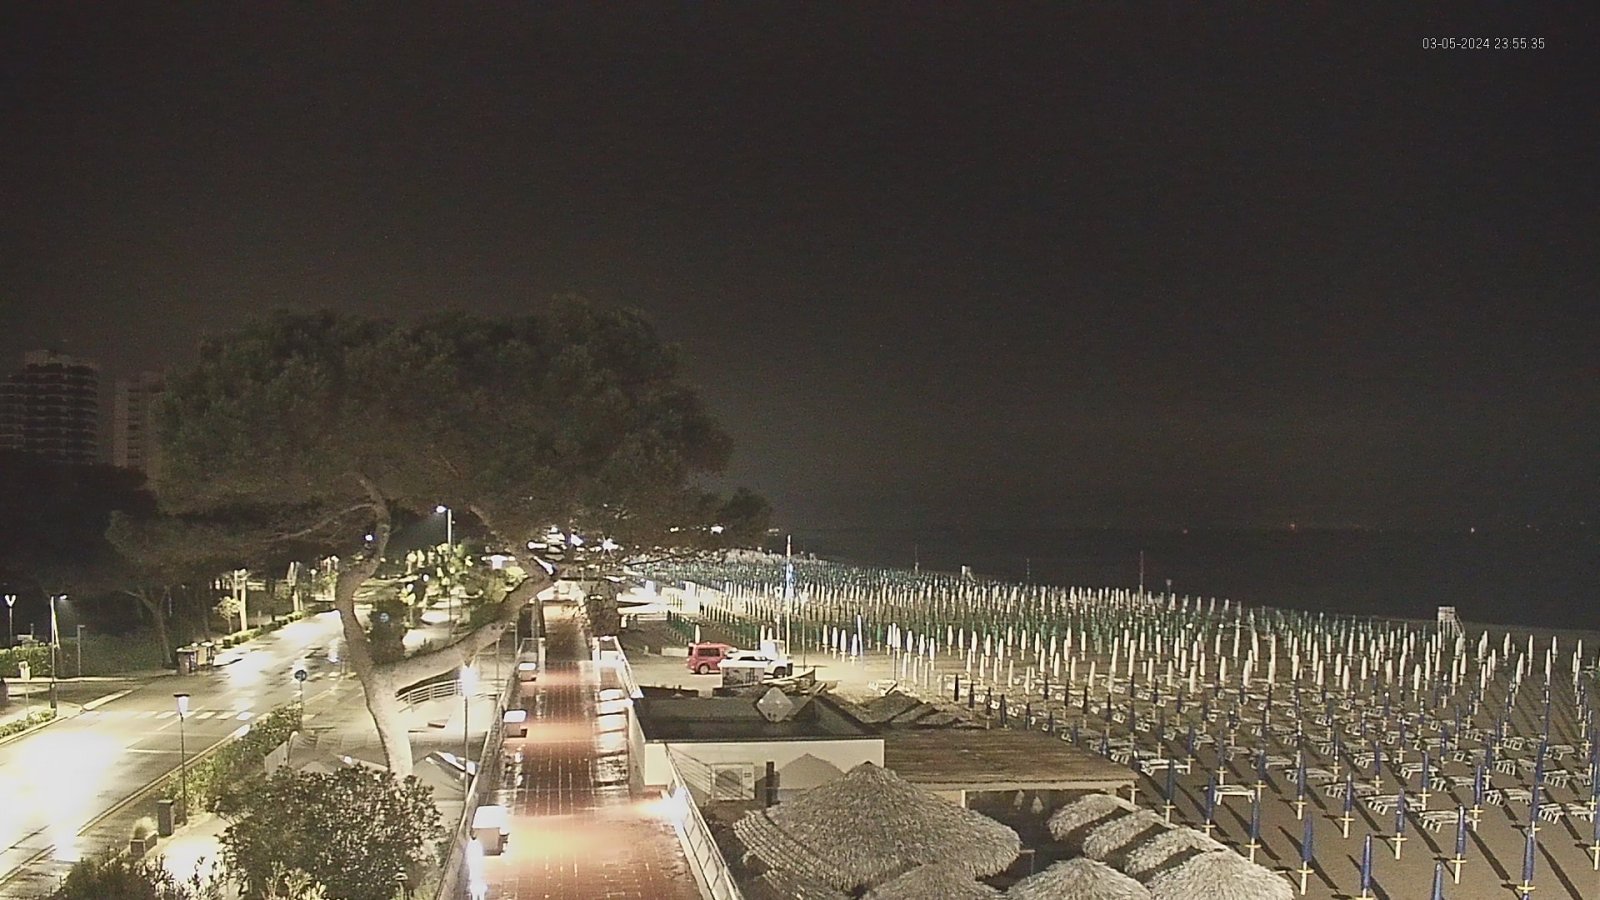 Webcam-Bild mit Blick auf den Strand und Sonnenschirme